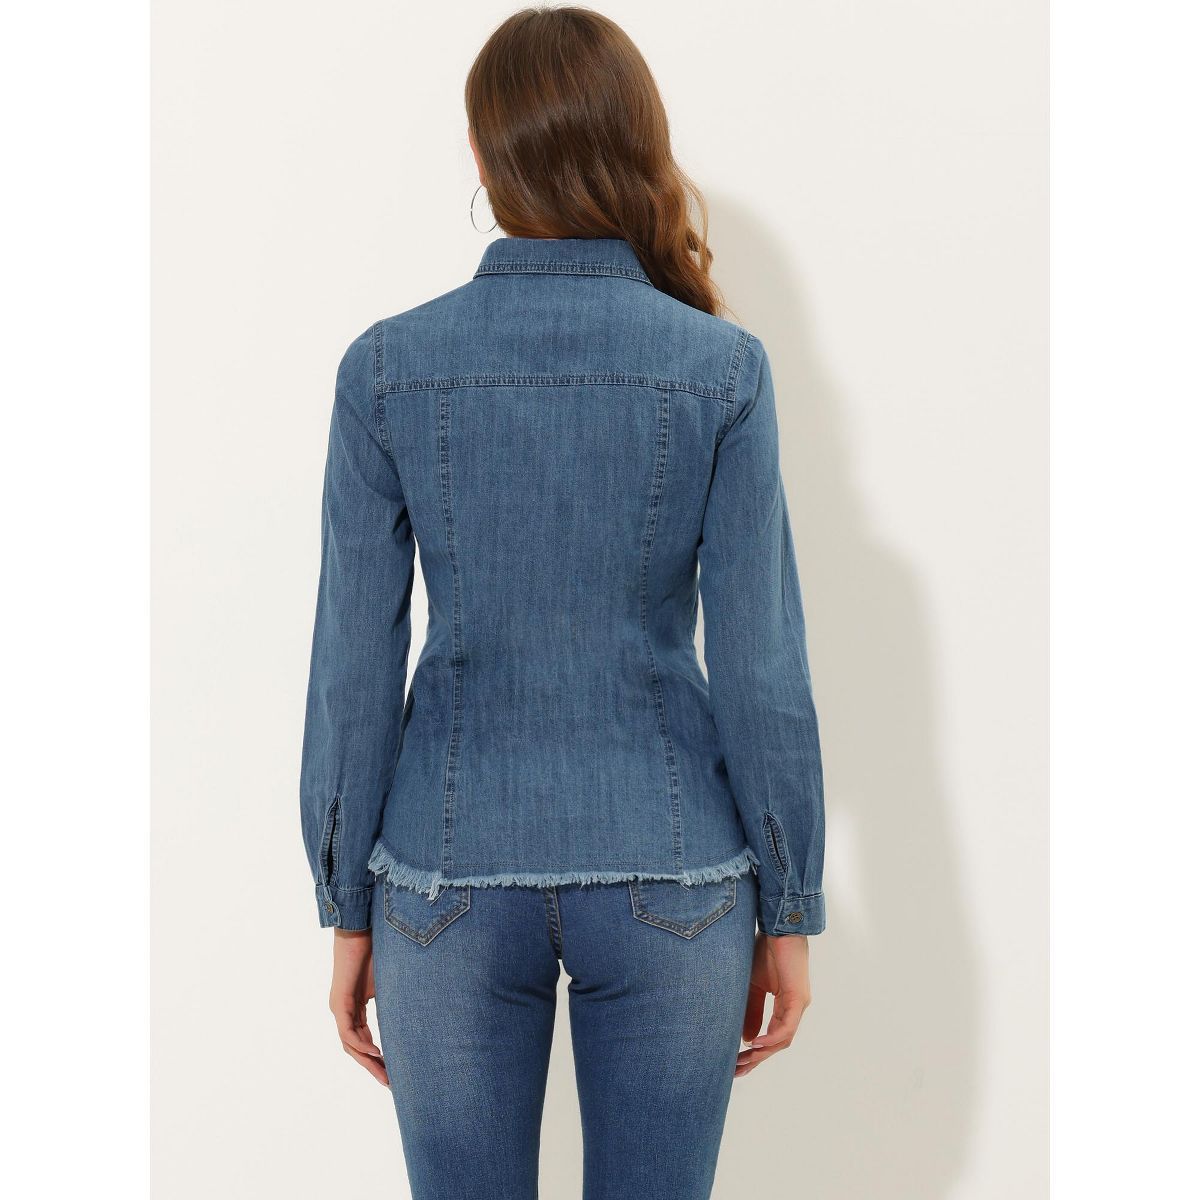 Allegra K Women's Jeans Long Sleeve Button Down Distressed Frayed Denim Shirt | Target